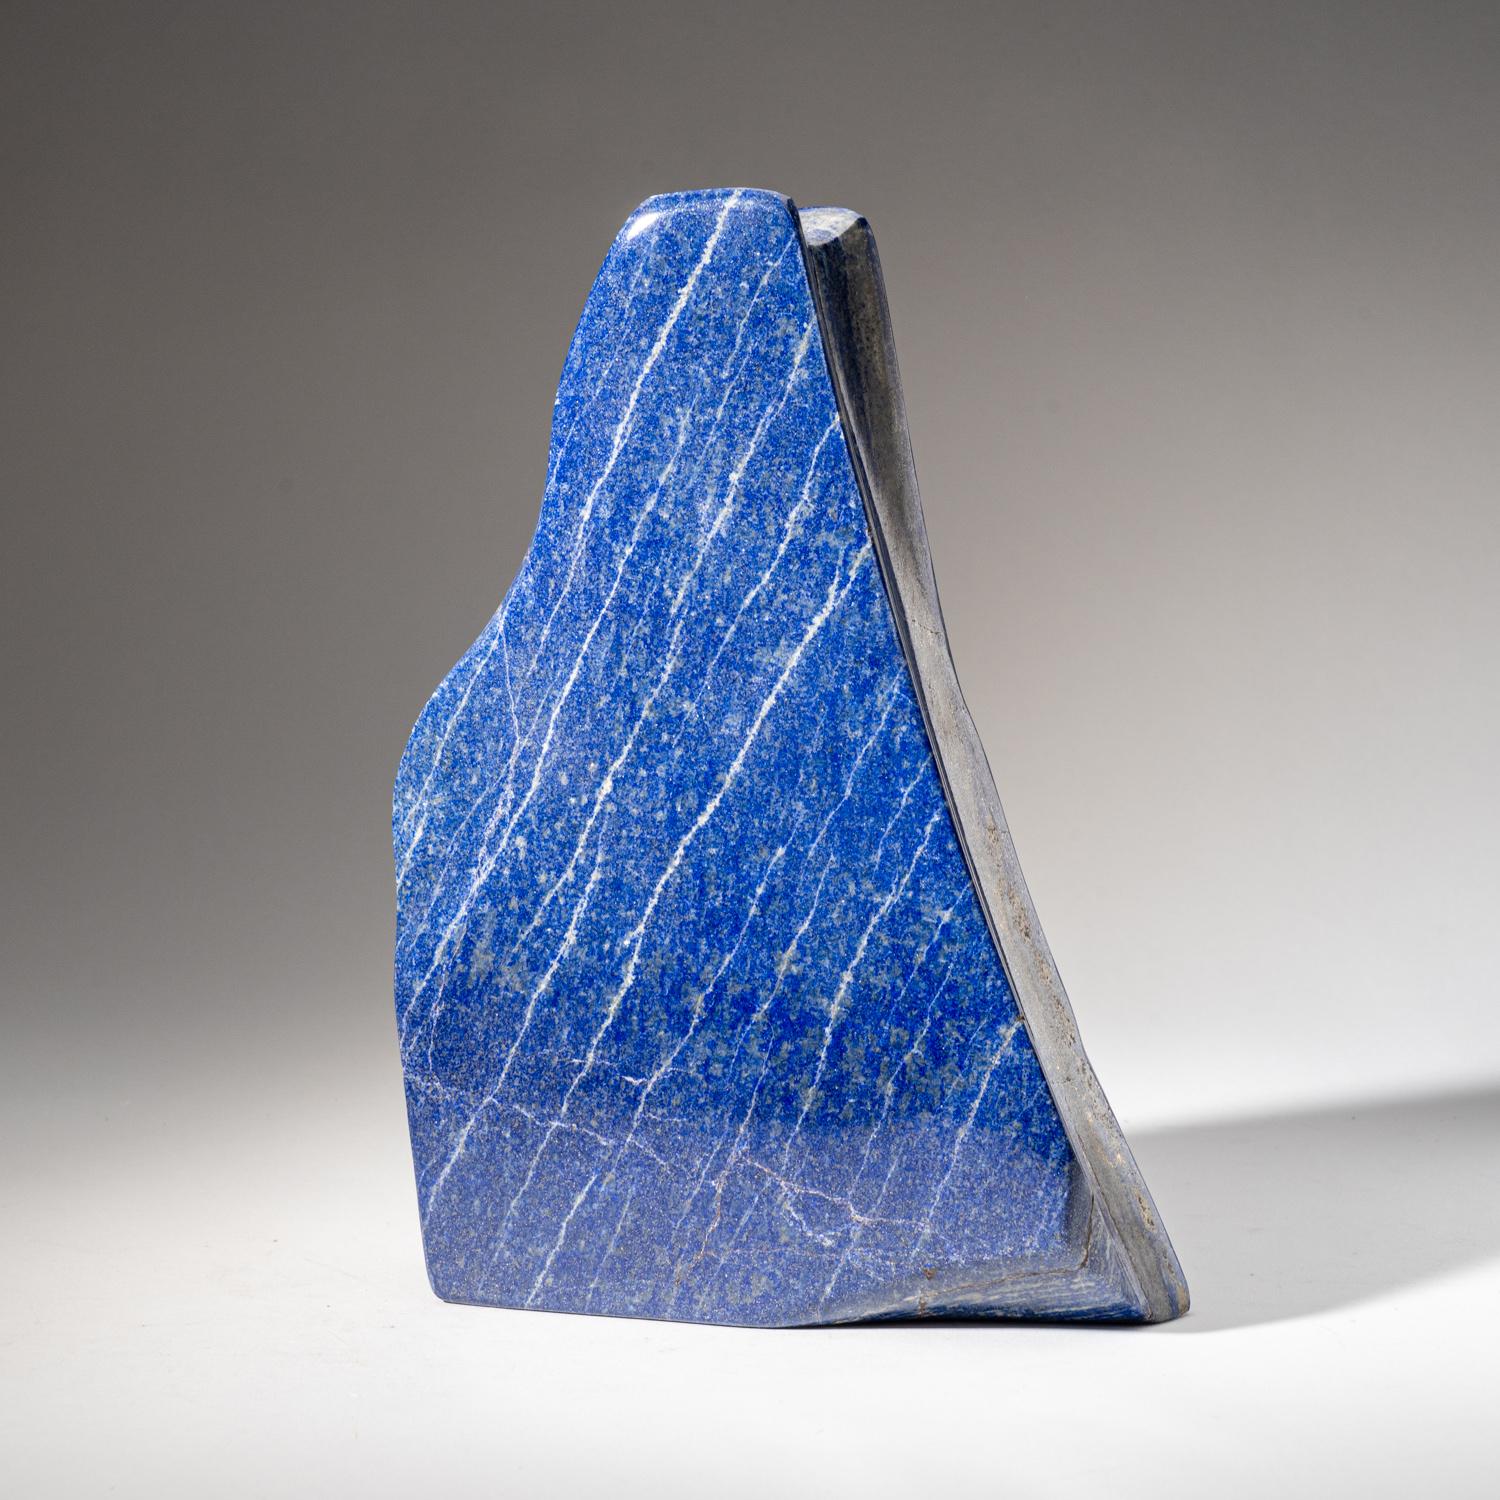 Schöne handpolierte freie Form aus natürlichem afghanischem Lapislazuli in AAA-Qualität.  Dieses Exemplar hat eine satte, elektrisch-königsblaue Farbe, die mit funkelnden Pyrit-Mikrokristallen angereichert ist.

Lapis Lazuli ist ein kraftvoller